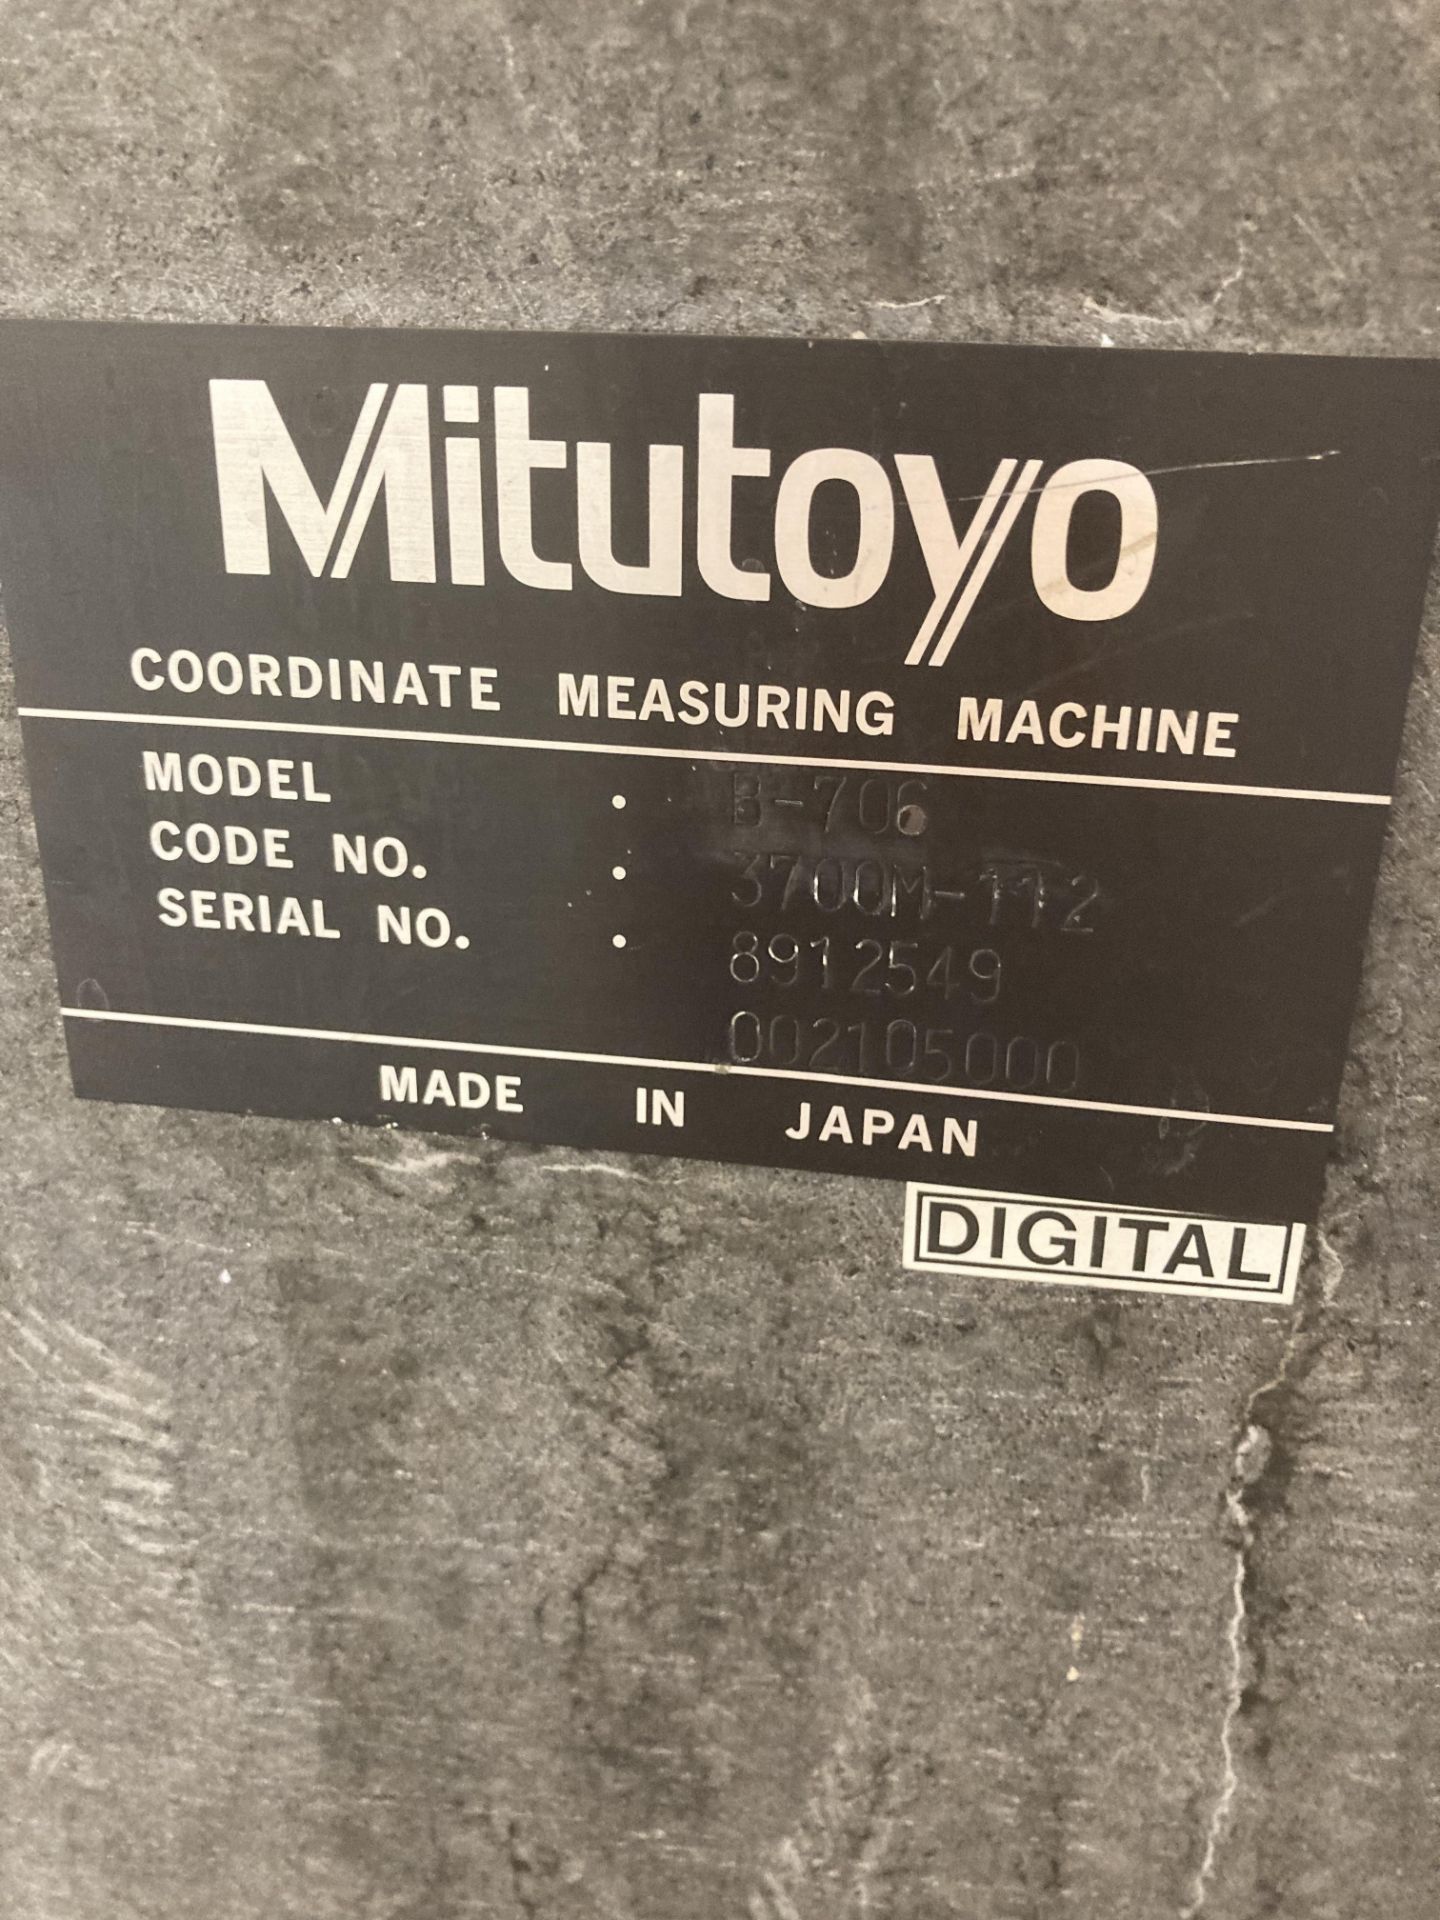 Mitutoyo B706 cordinate measuring machine Serial No. 8912549 (2011) with Renishaw MH20i - Bild 4 aus 5